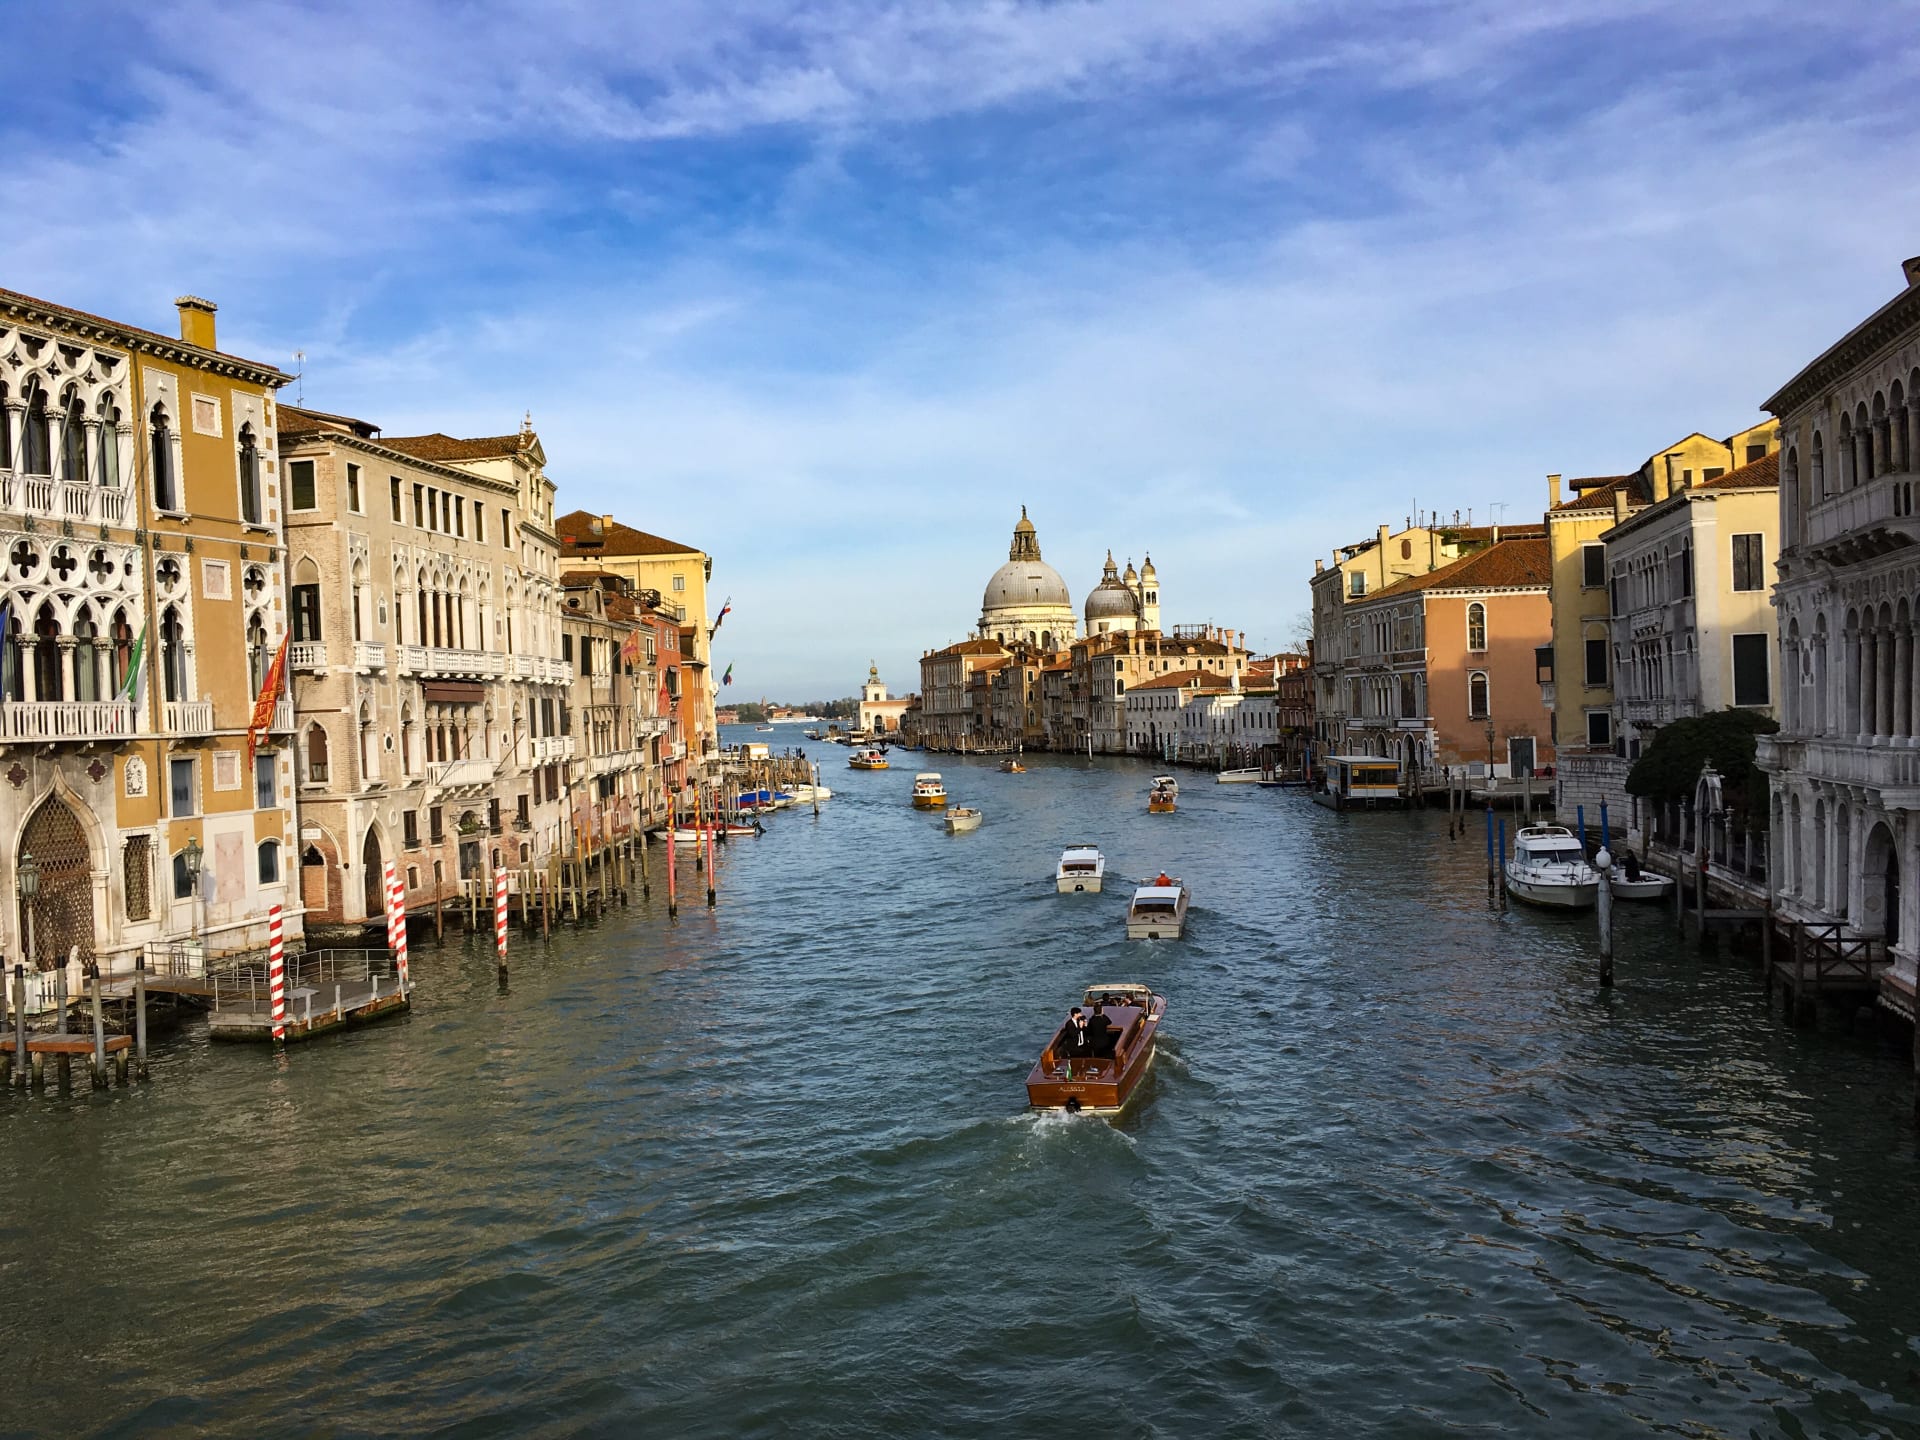 Benátky se vyplatí navštívit nejpozději v říjnu, sledujte předpověď počasí.